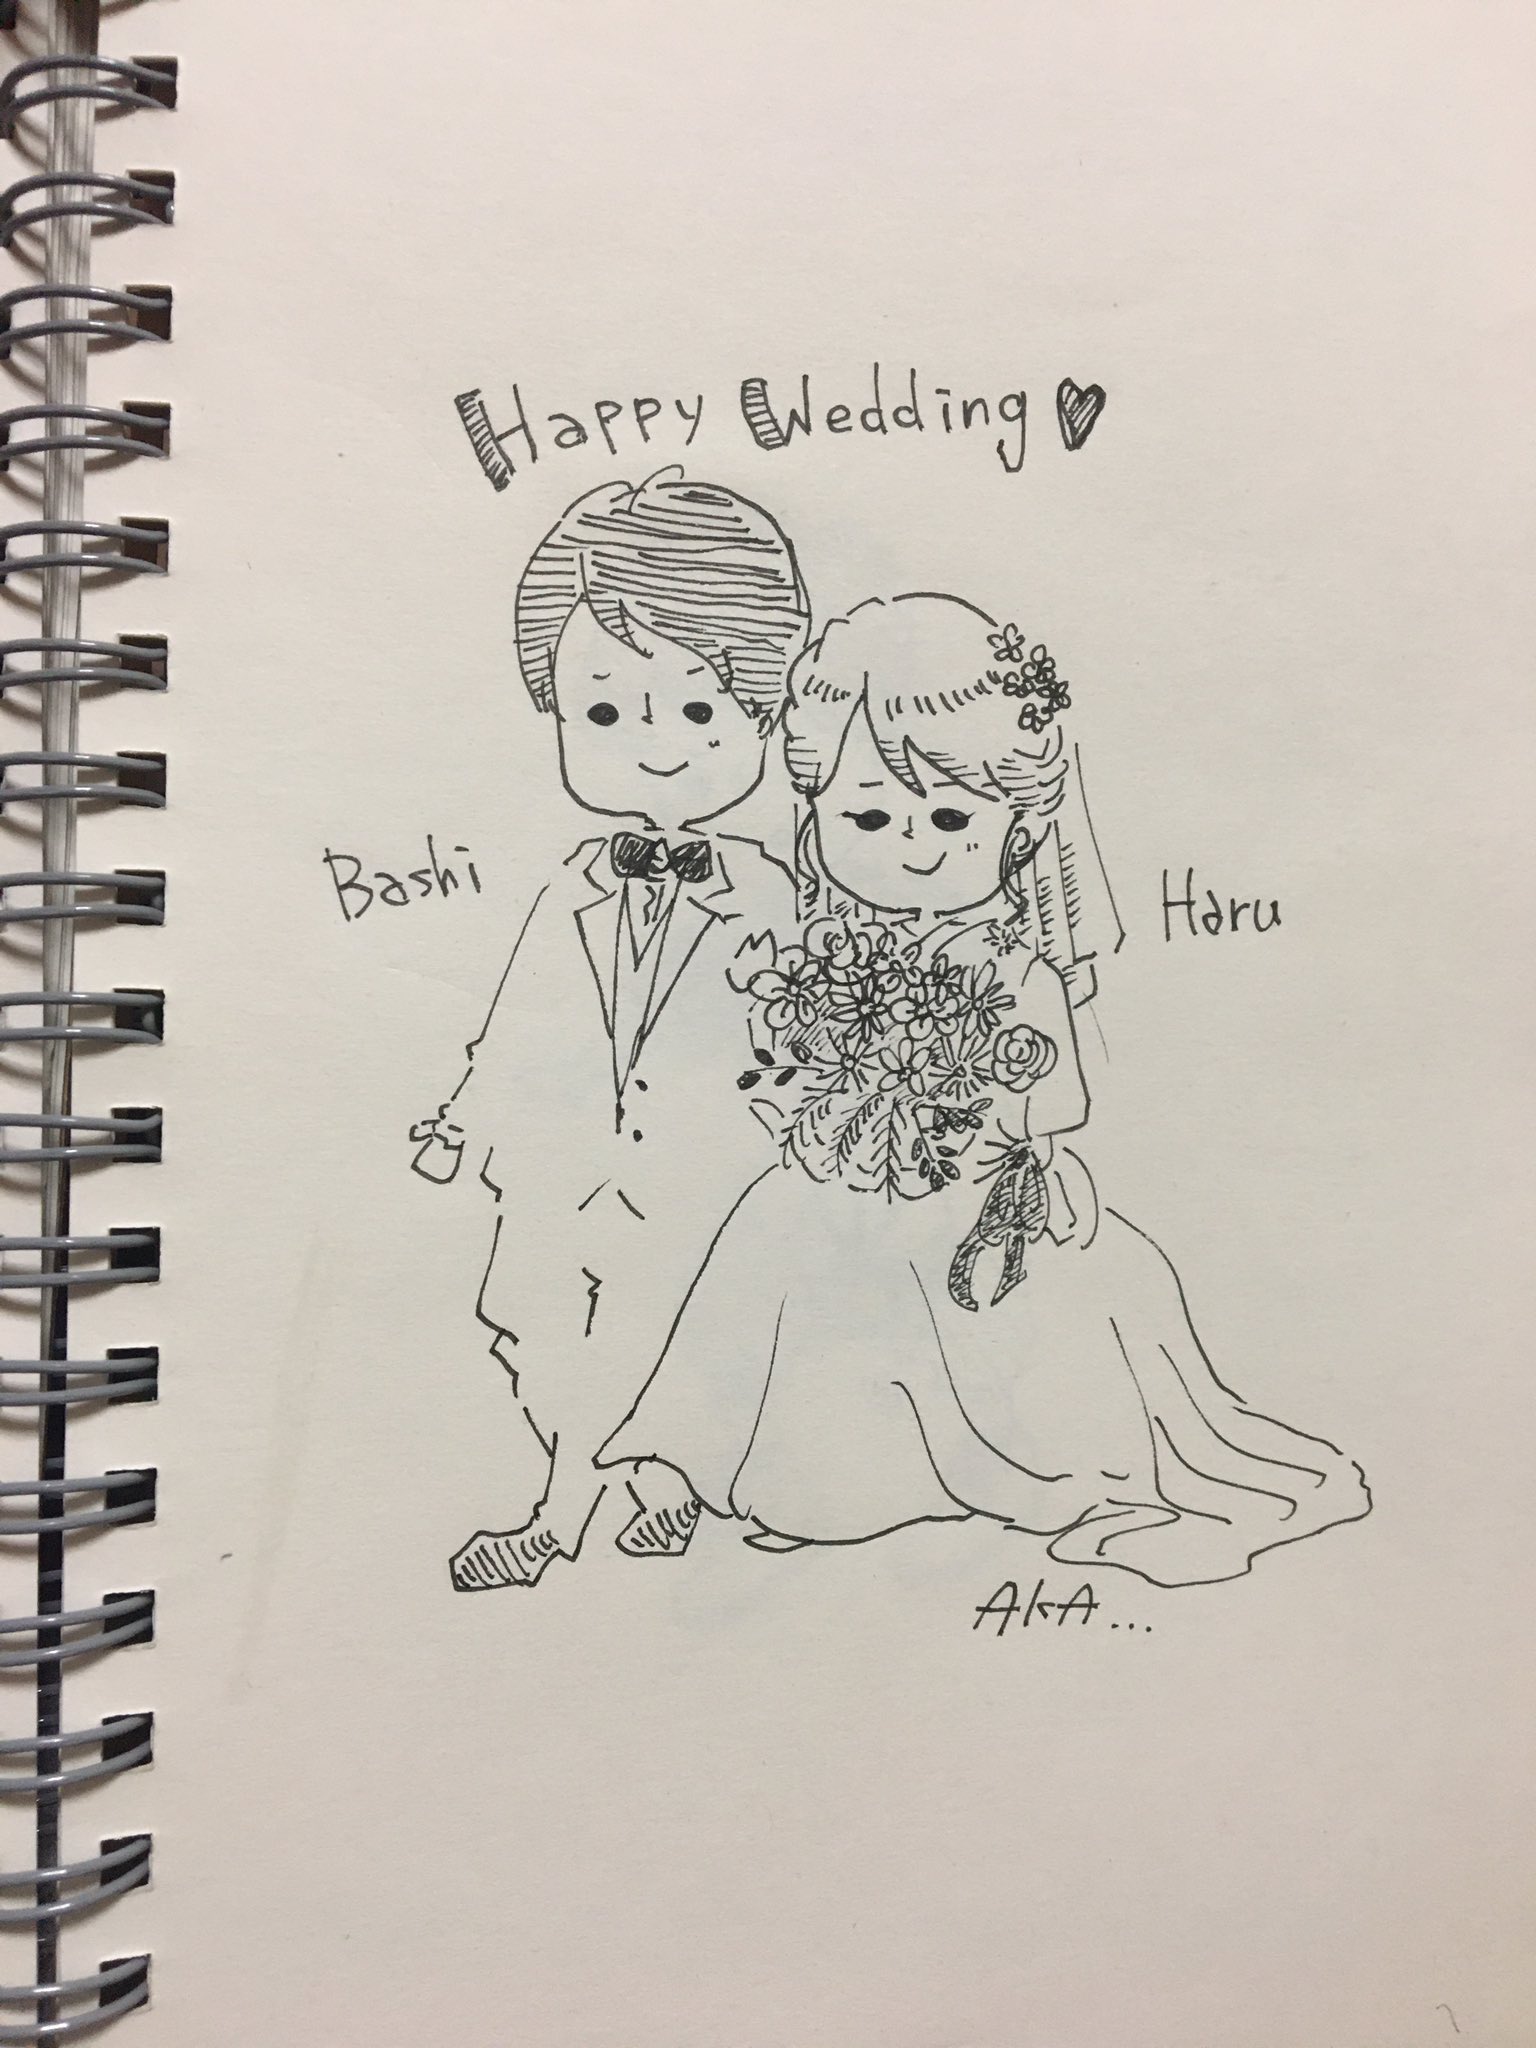 ট ইট র いとうあかり Akari Ito イラストレーター 漫画家 友人の結婚式 おめでとう ボールペンで一発がき 結婚式イラスト お絵かき イラストレーション 結婚式 Happywedding T Co Stbqhtuvl5 ট ইট র